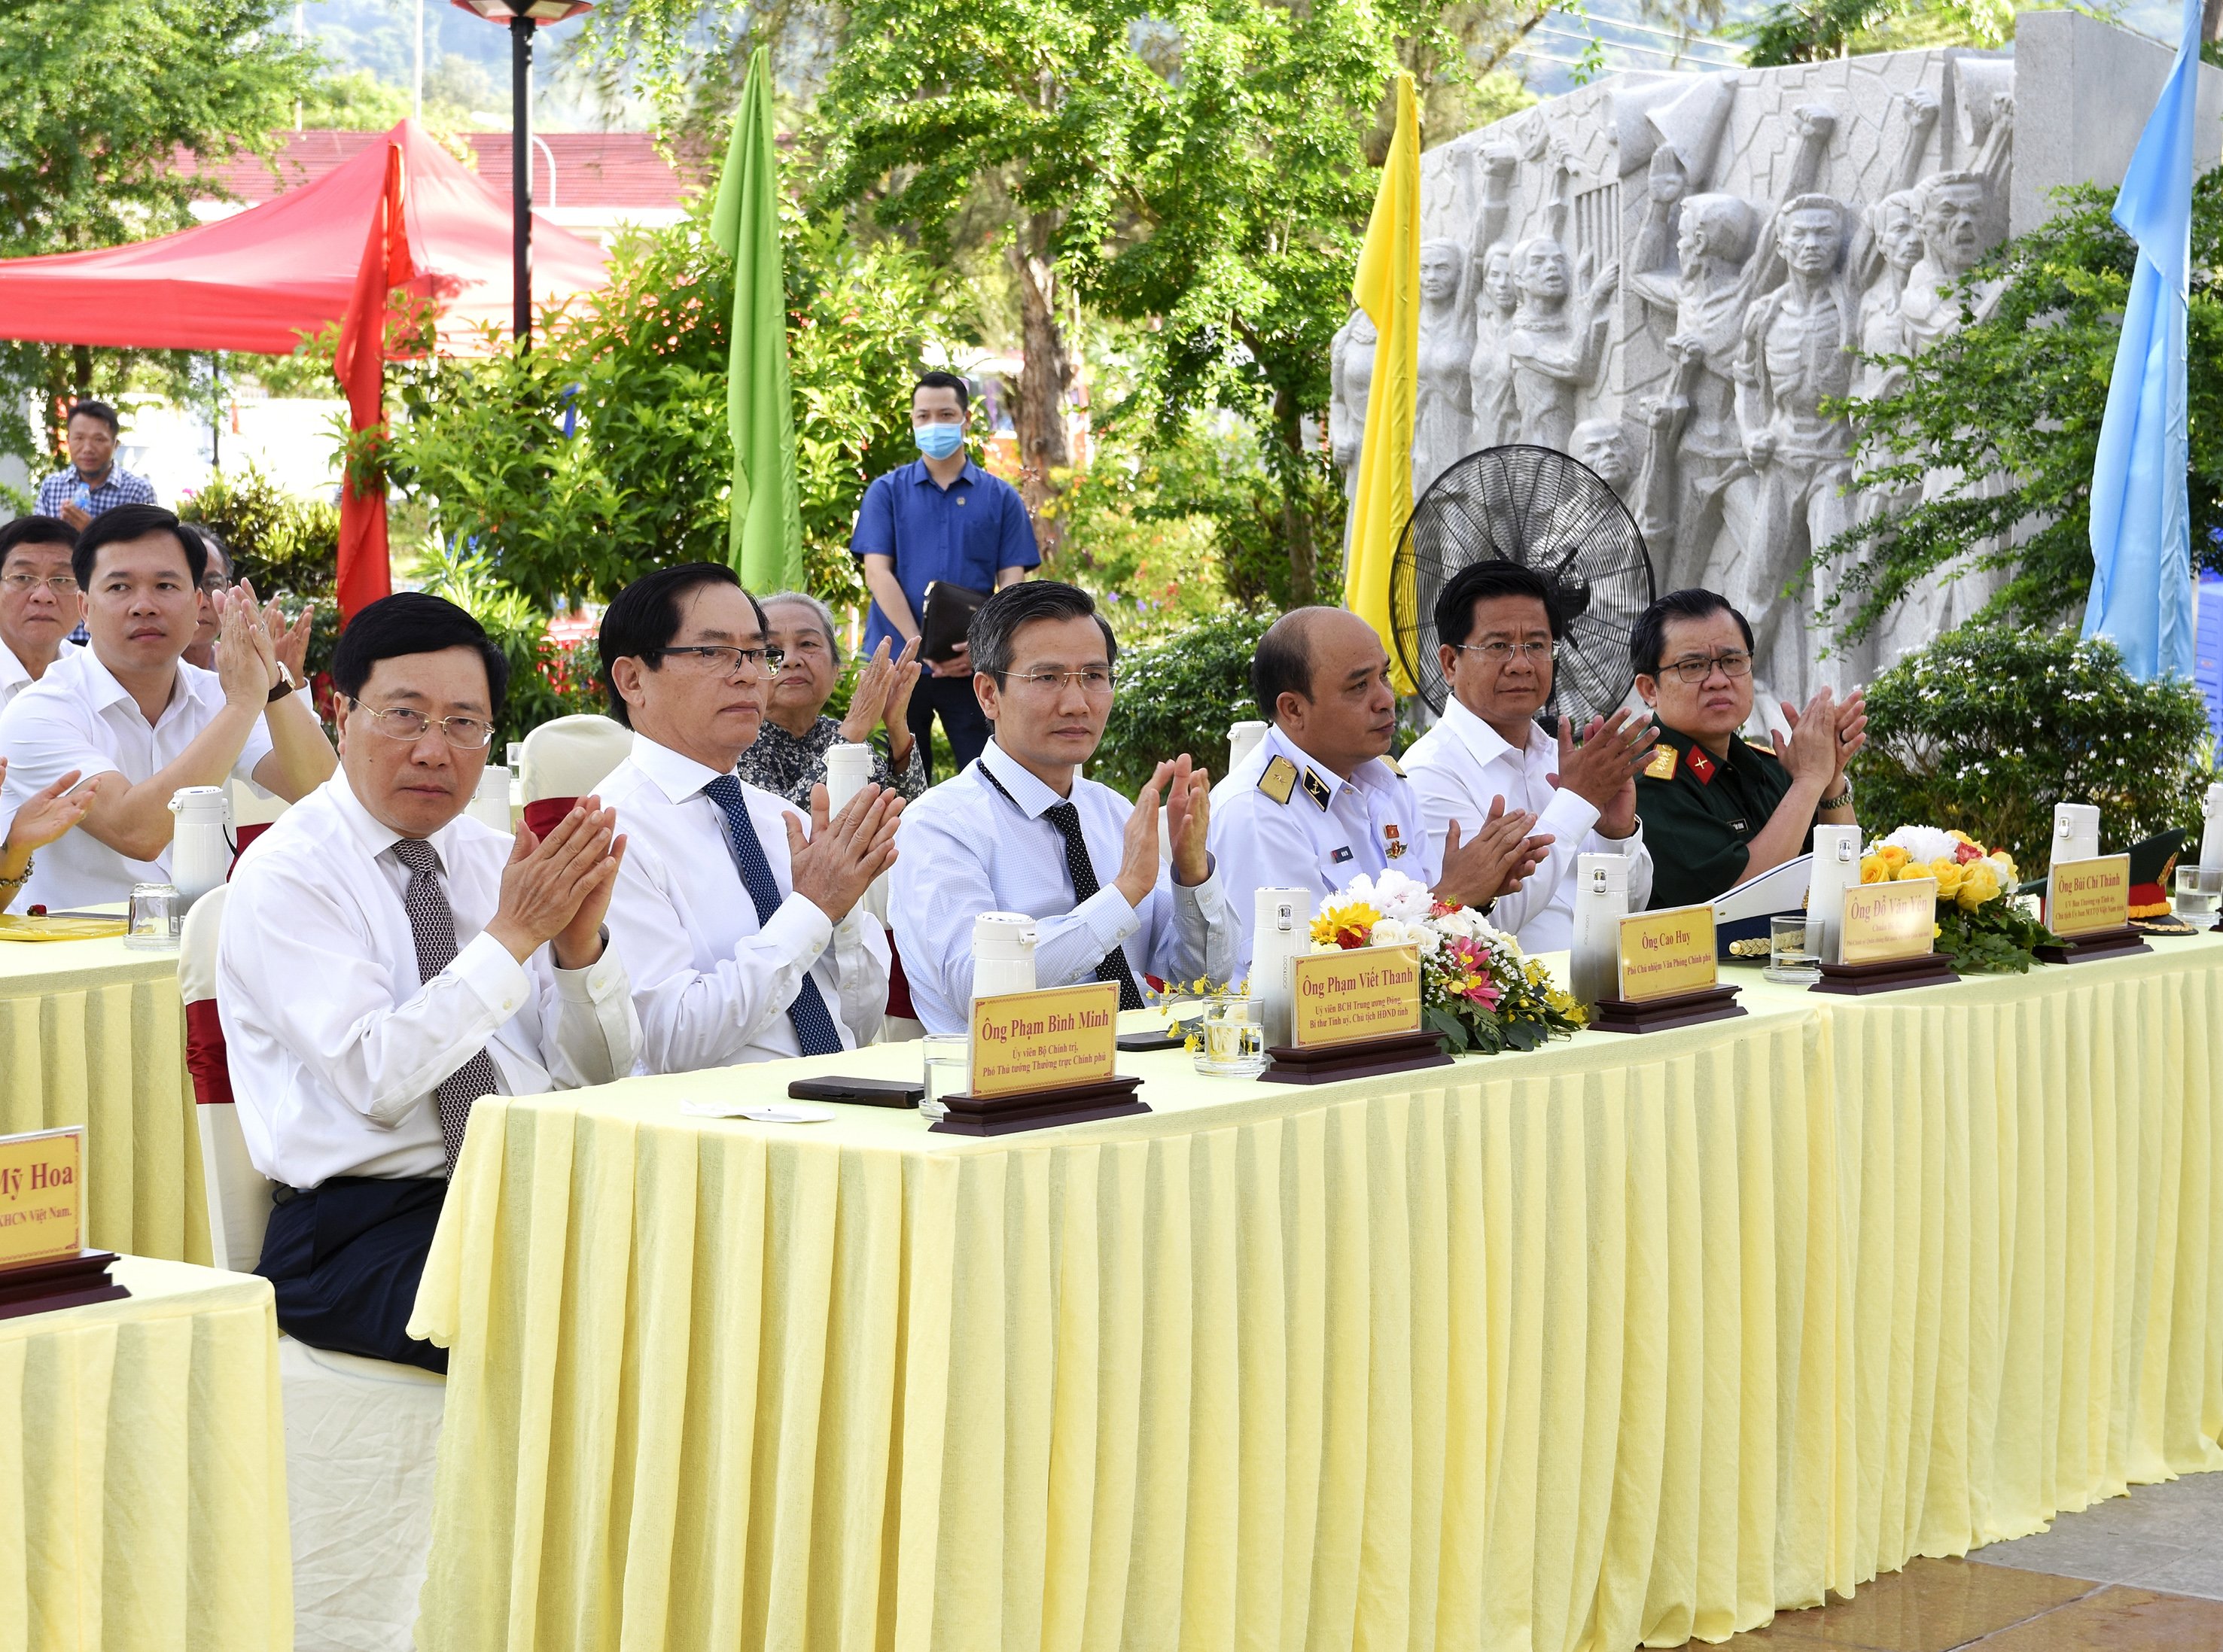 Phó Thủ tướng Phạm Bình Minh; ông Phạm Viết Thanh, Bí thư Tỉnh ủy, cùng các đại biểu dự lễ.